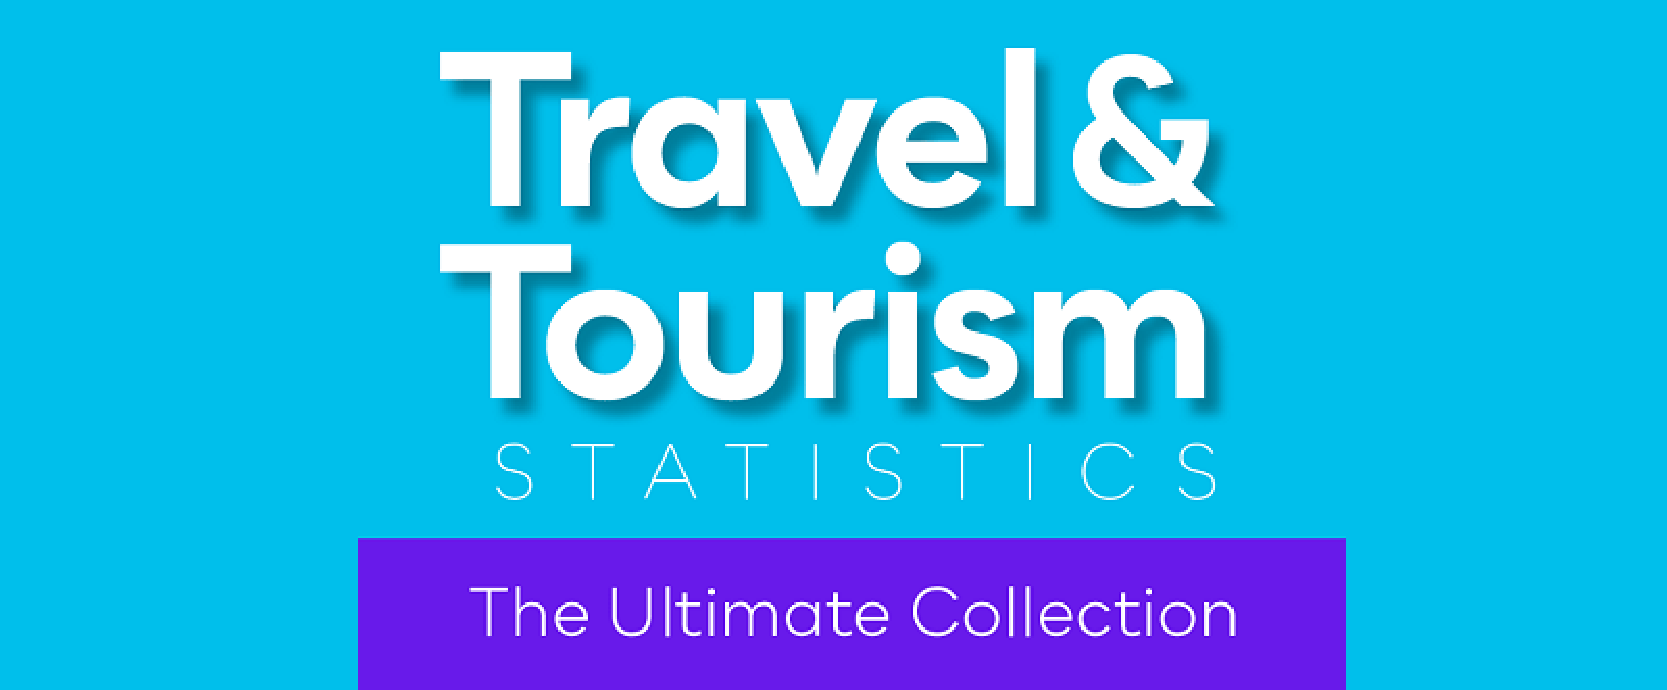 travel time tourism reviews